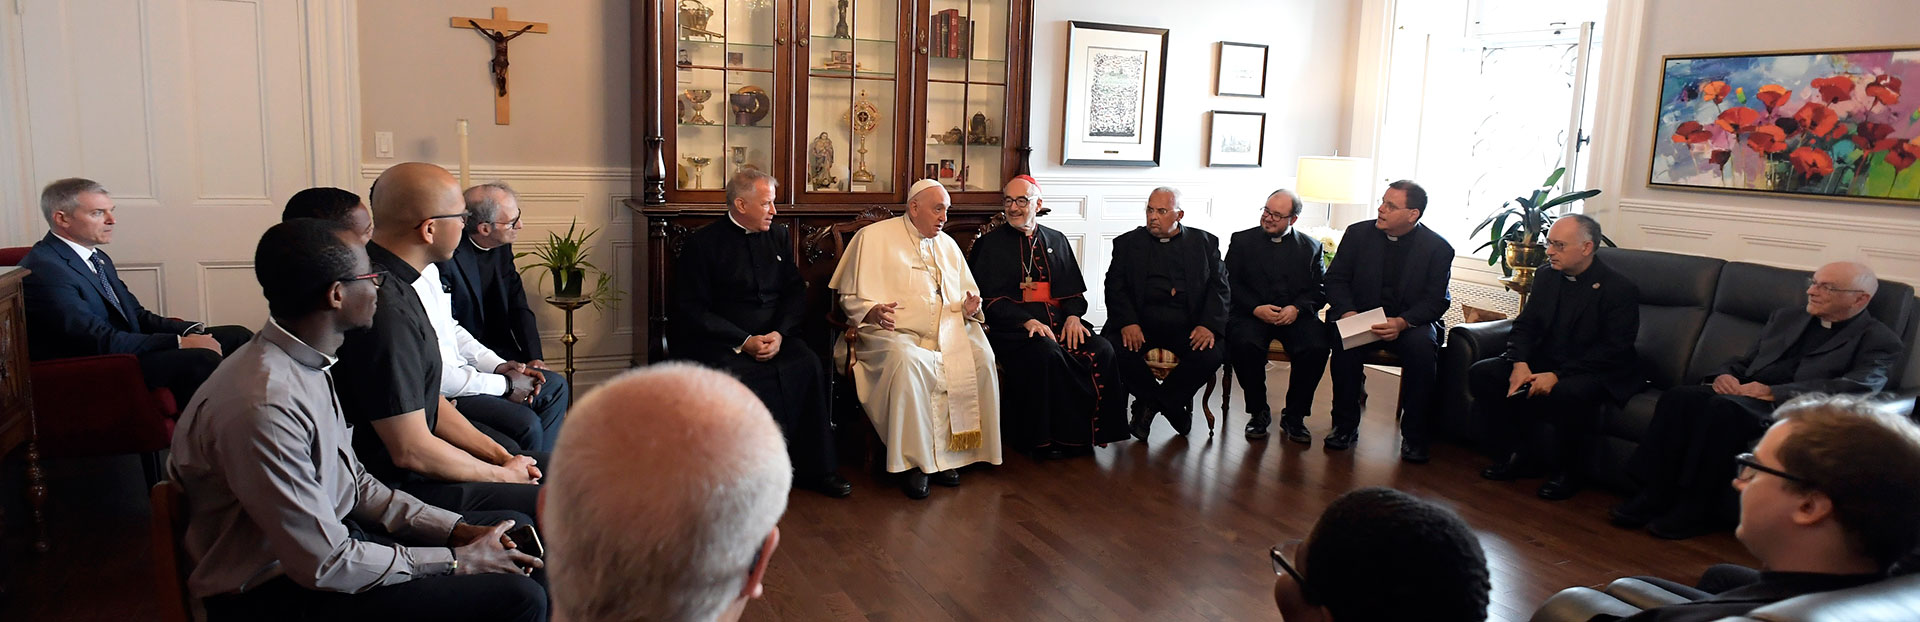 Le Pape François avec ses compagnons jésuites de Québec